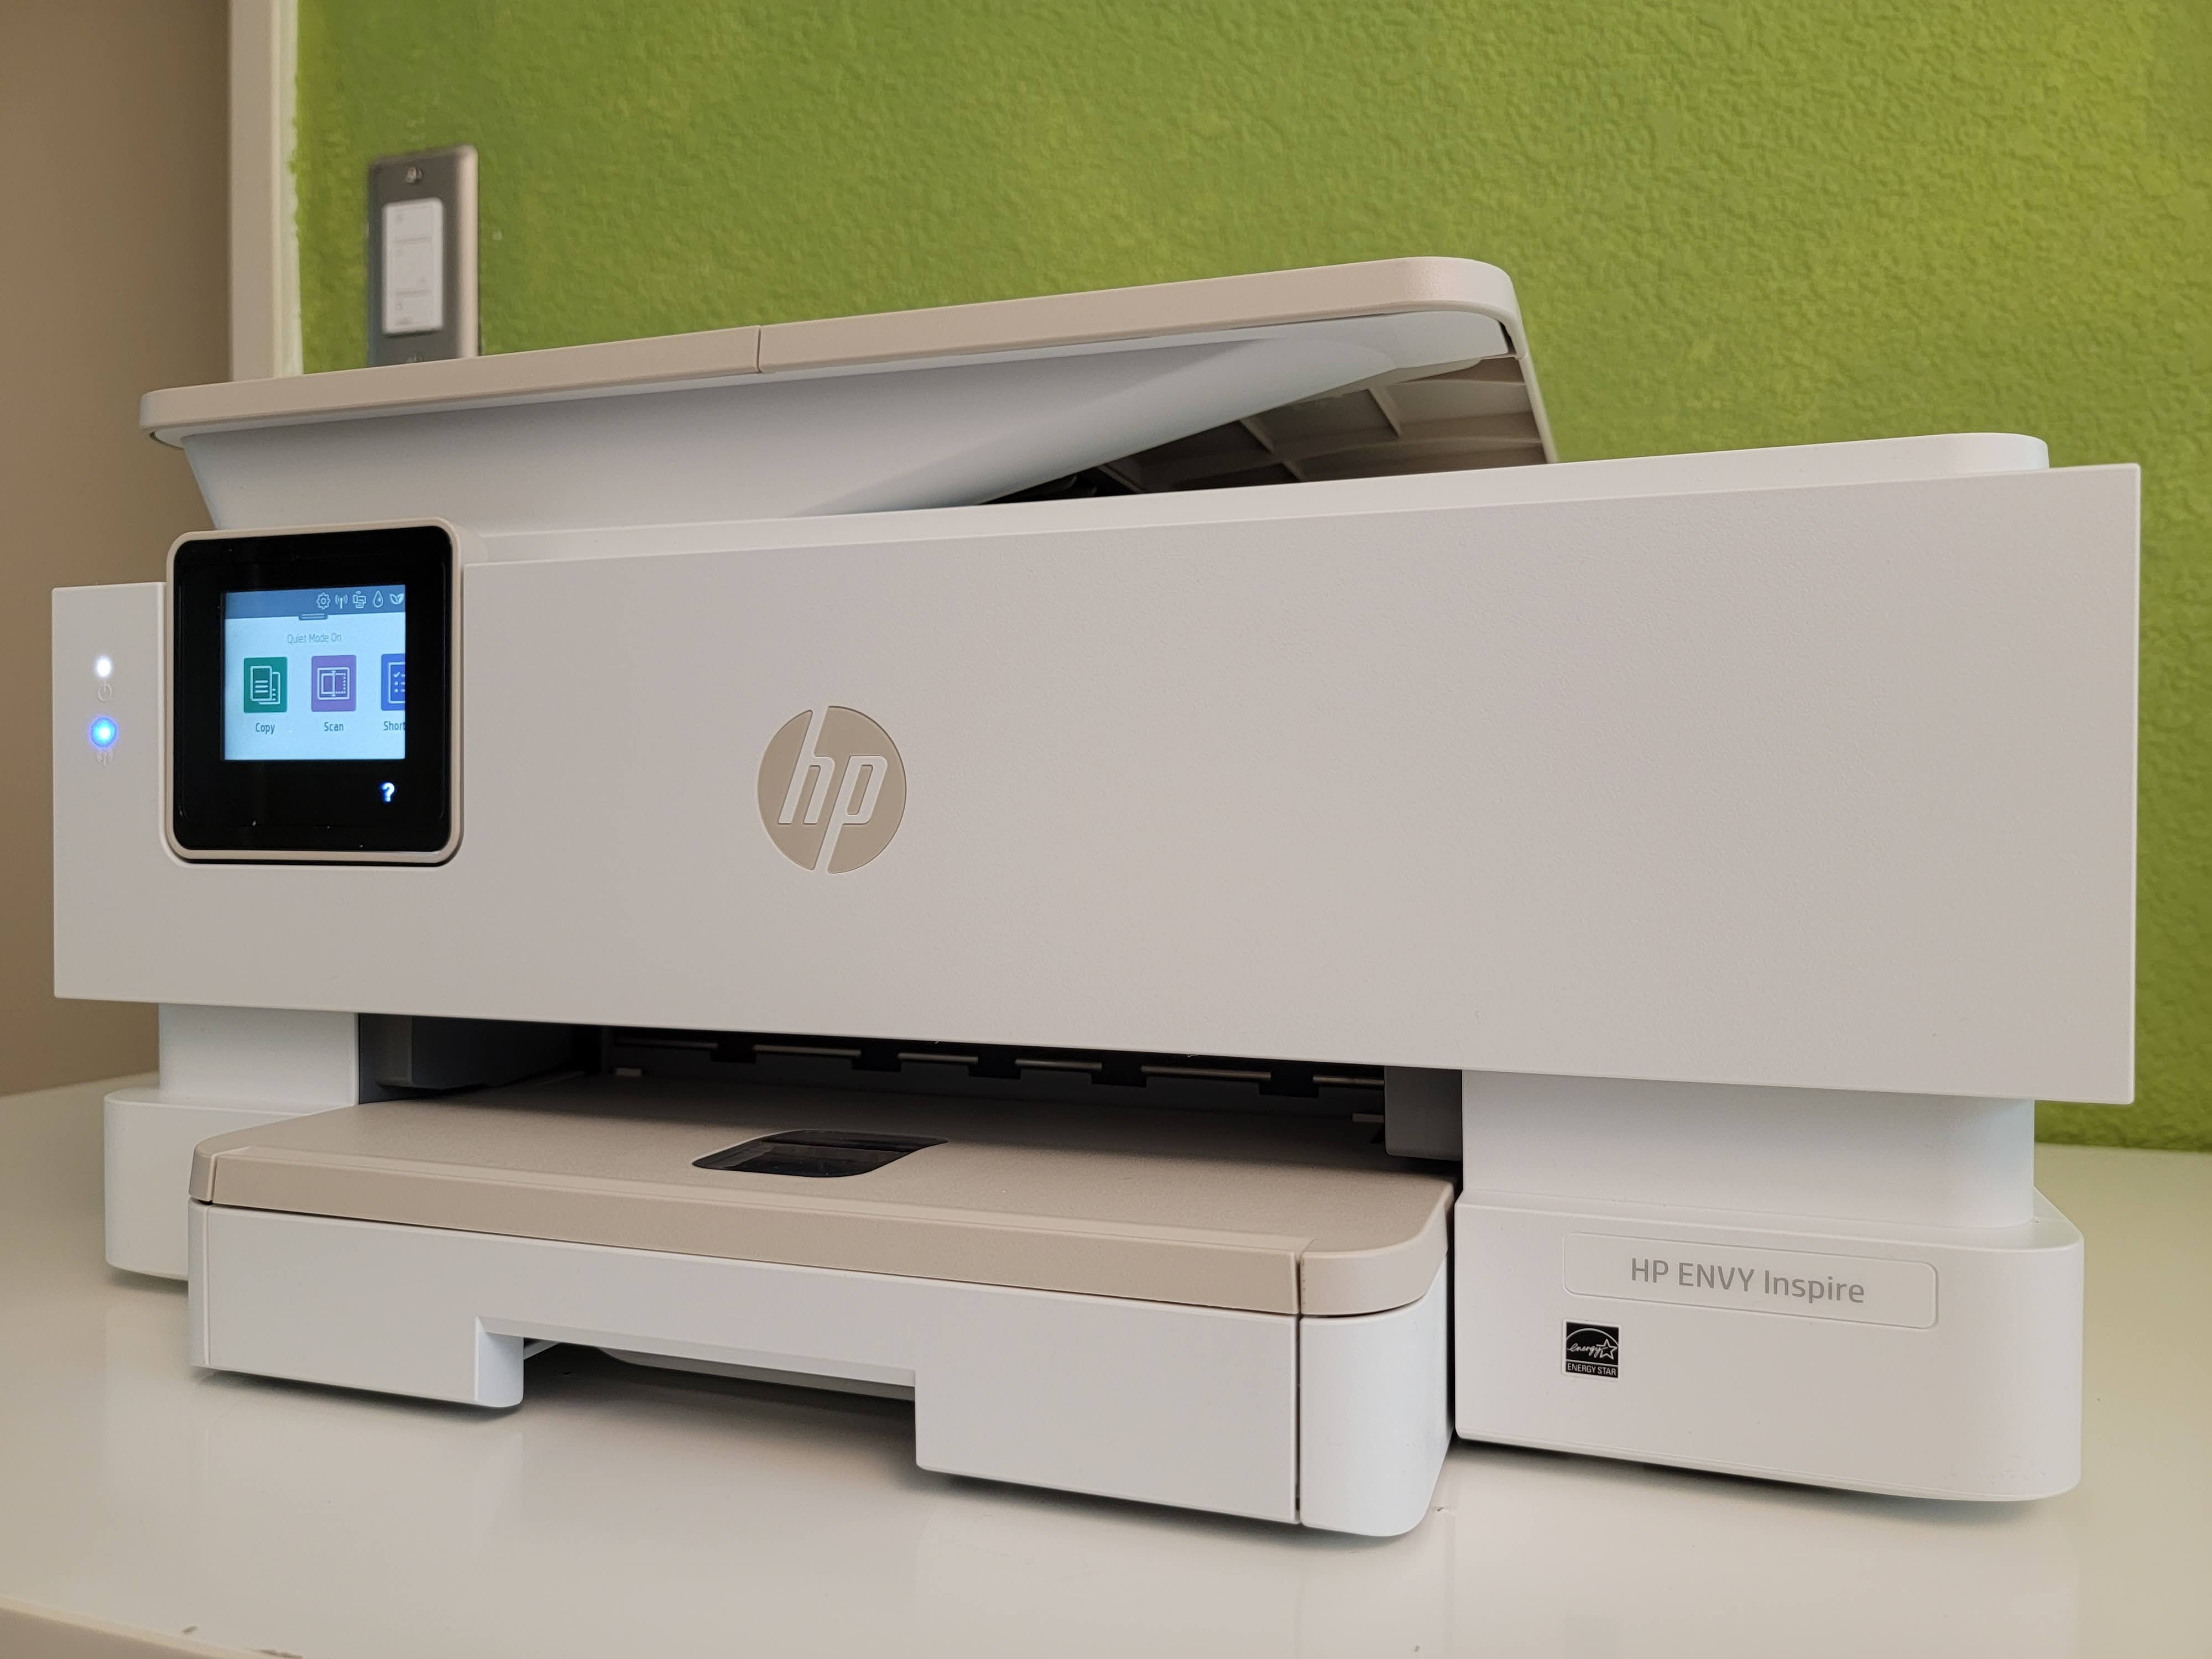 HP Envy Inspire 7900e Review: A Office Printer | Digital Trends